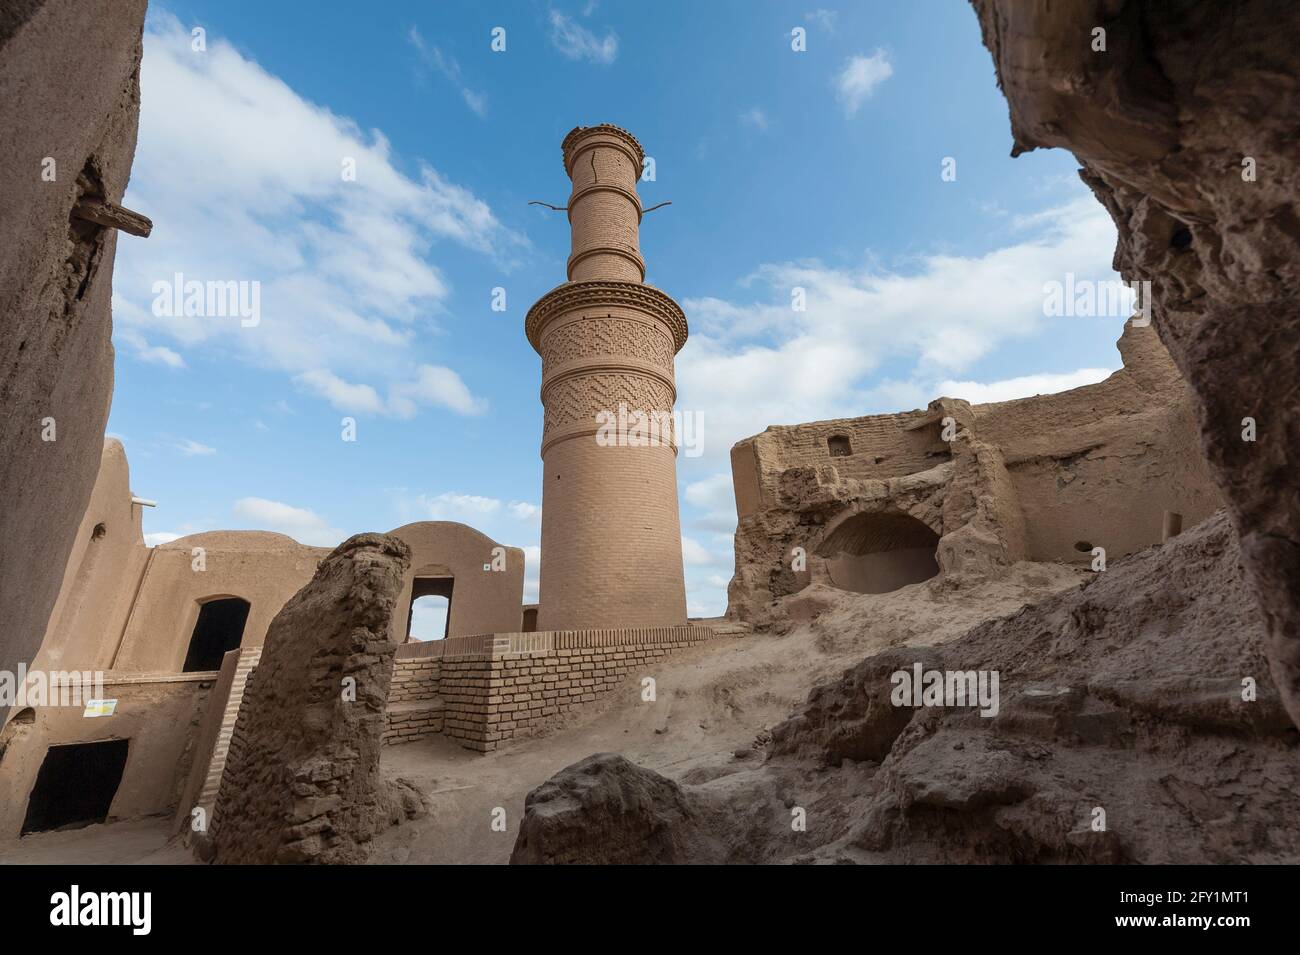 El minarete temblor en el pueblo de Kharanaq, de 1000 años de edad, se derrumbó con ladrillos de barro. Condado de Ardakan, Provincia de Yazd, Irán. Foto de stock